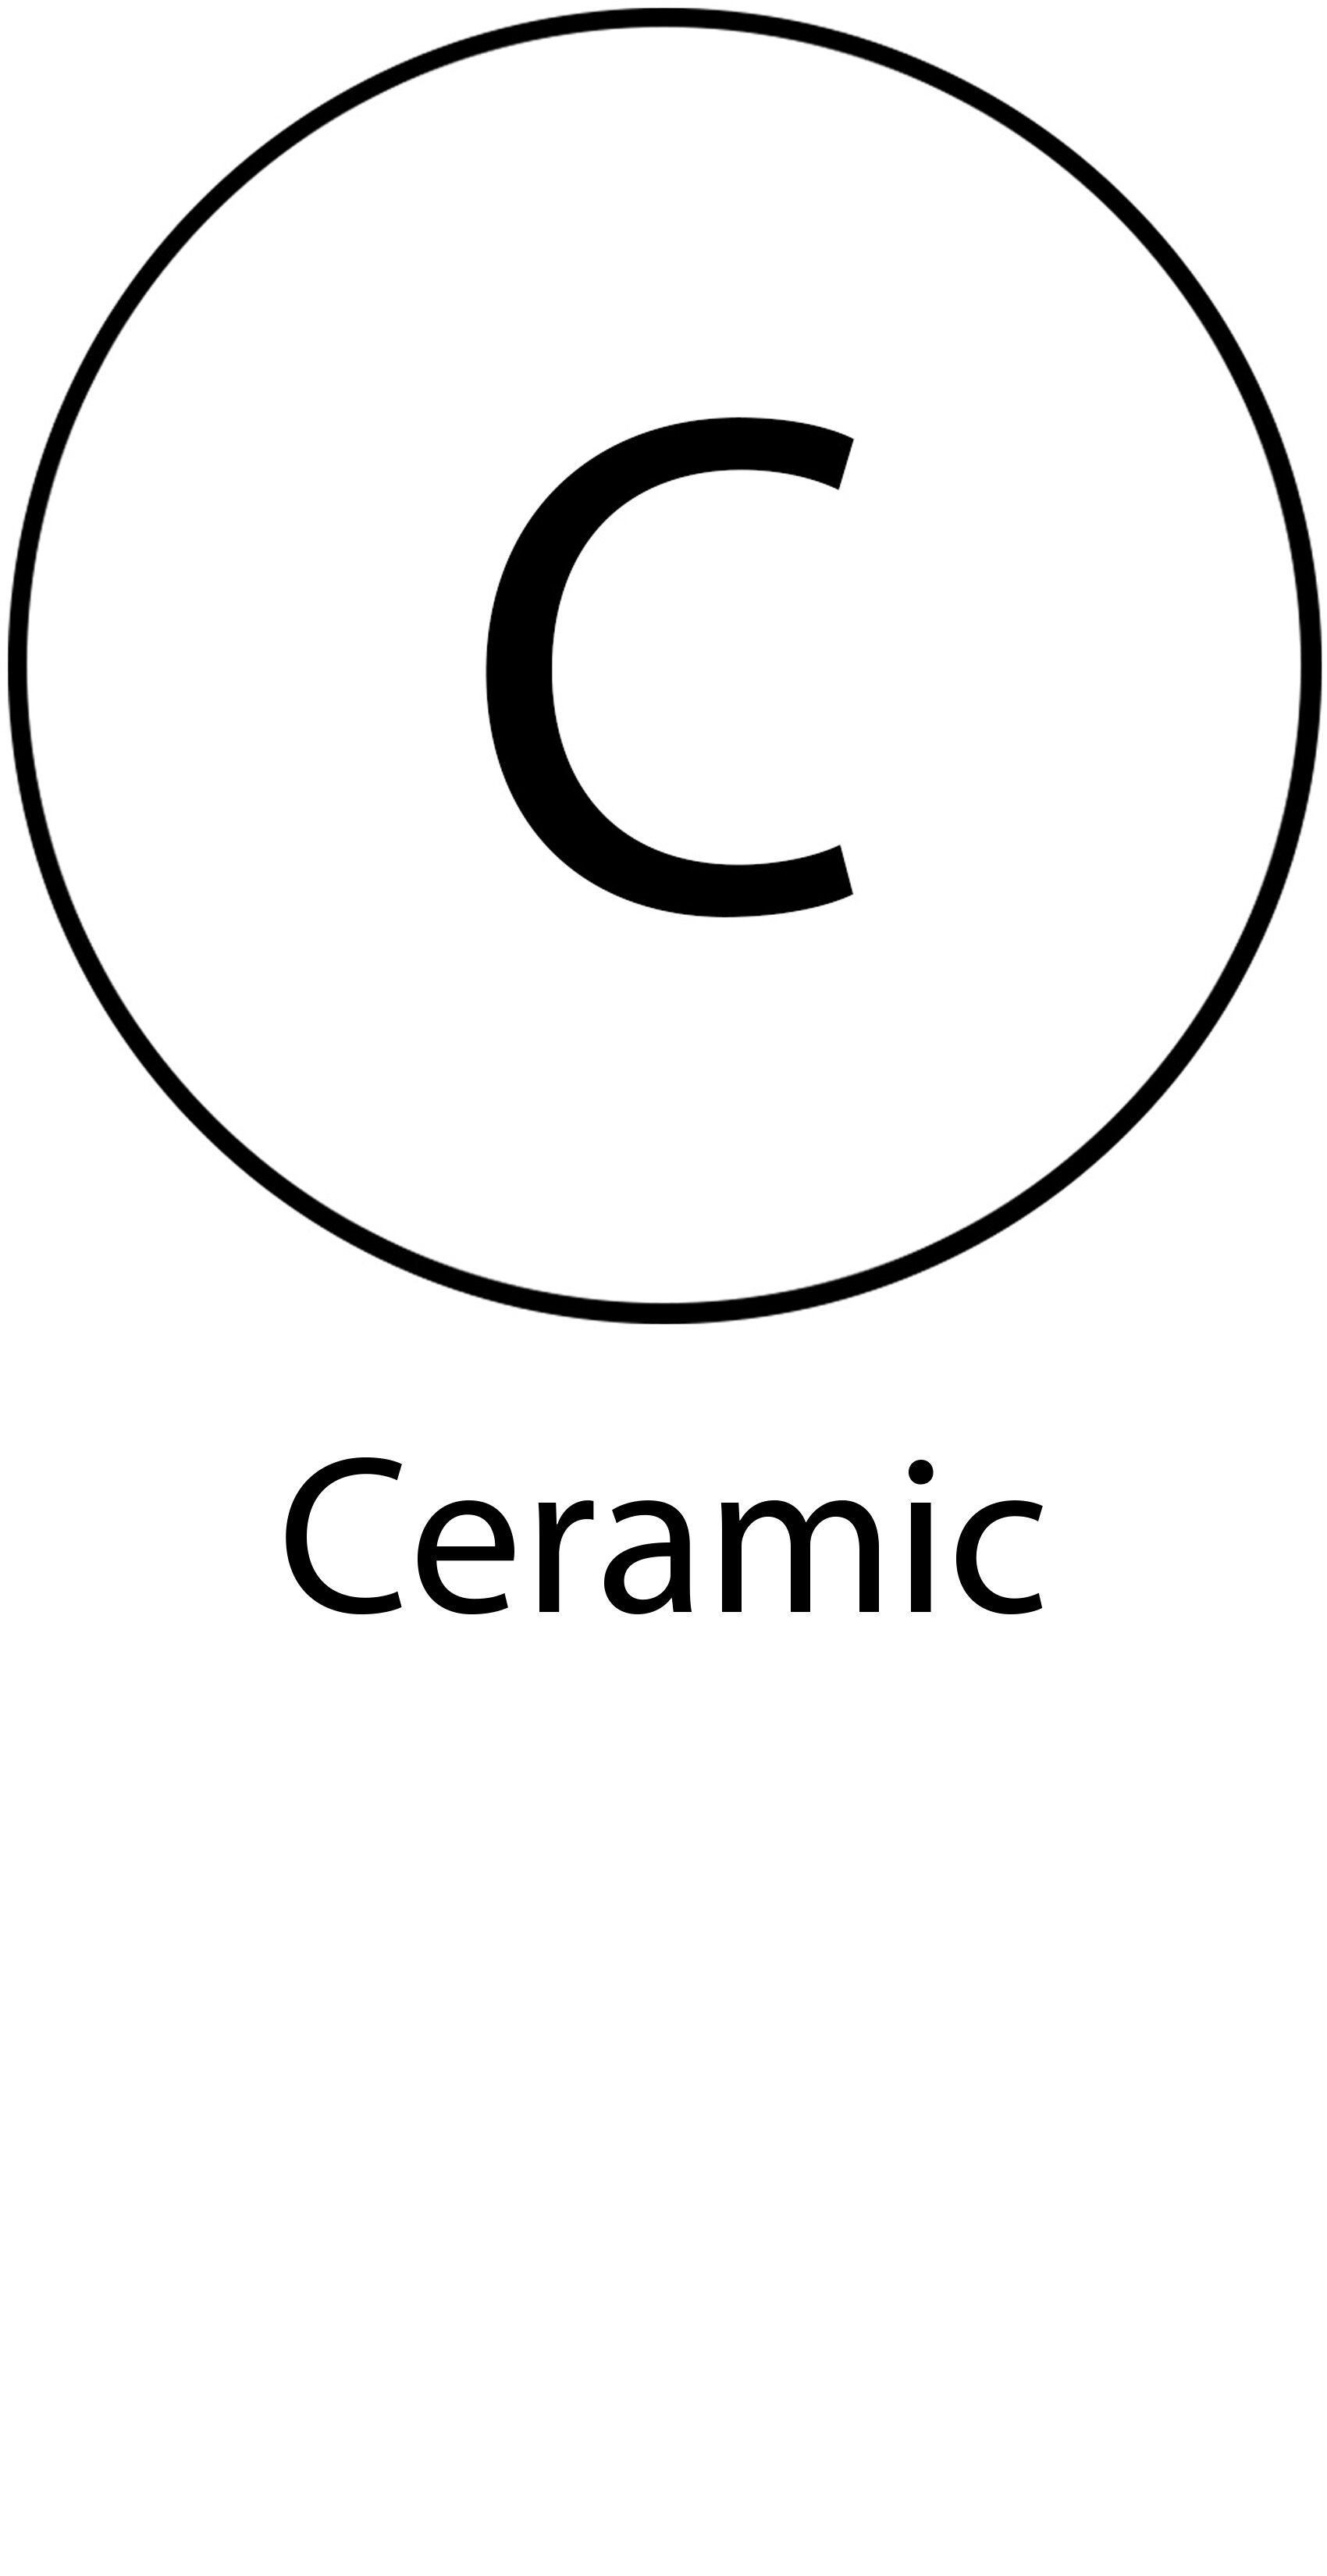 01 ceramic.jpg